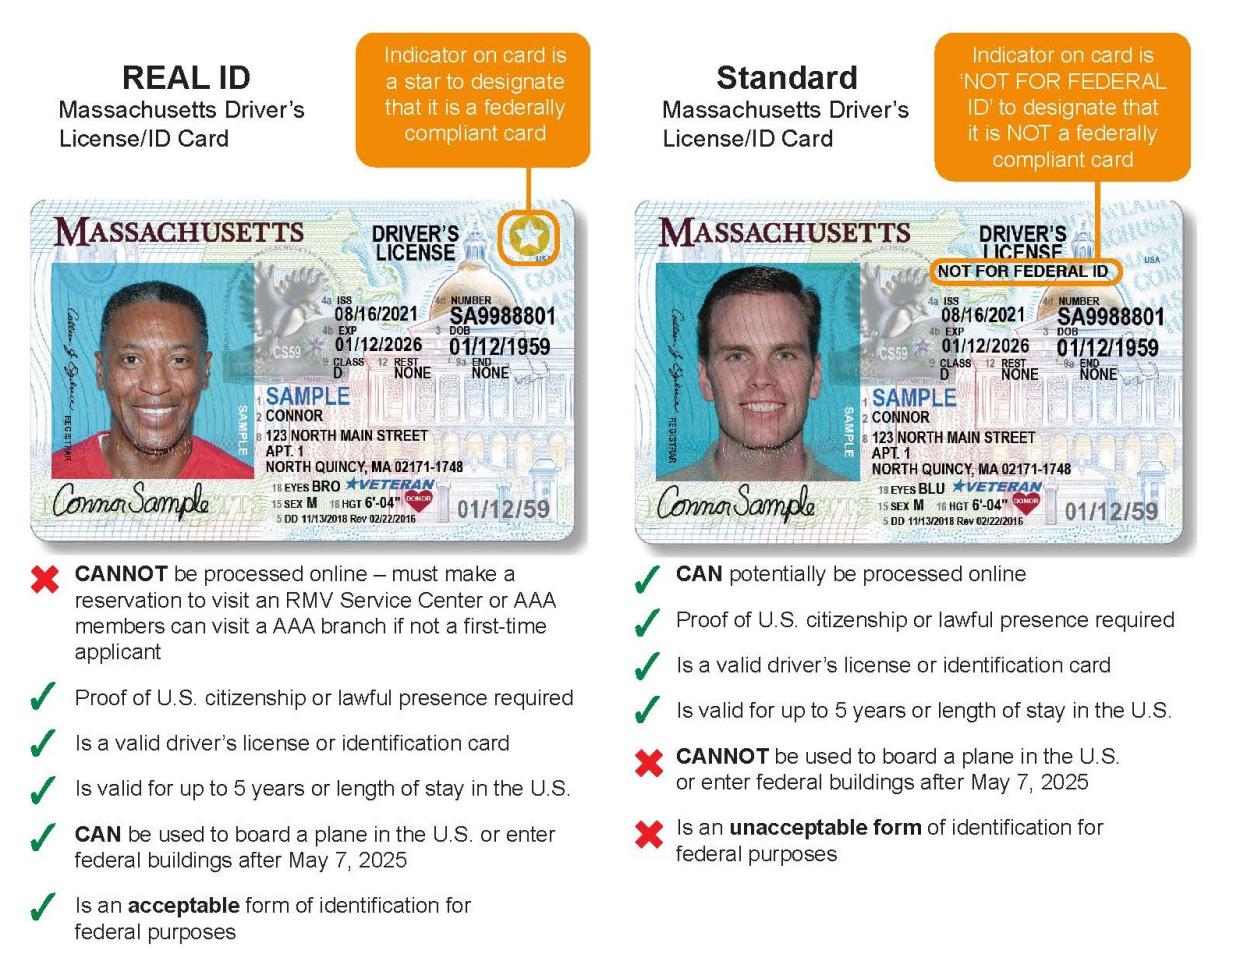 REAL ID Comparison